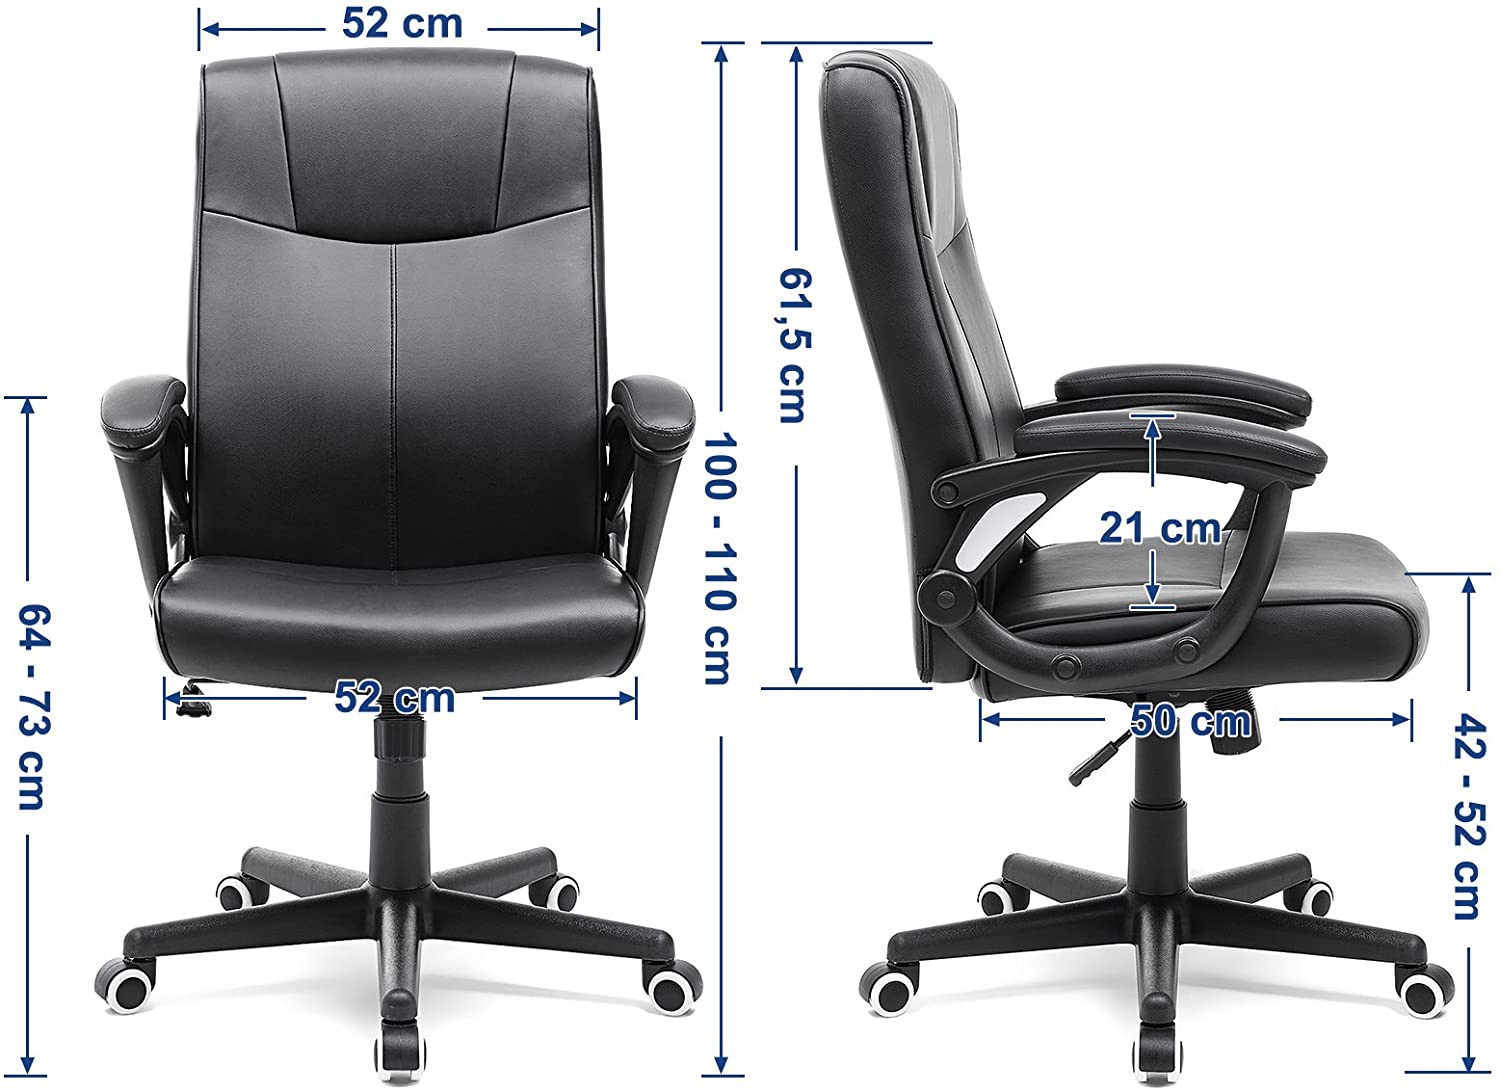 Kancelářská židle OBG32B